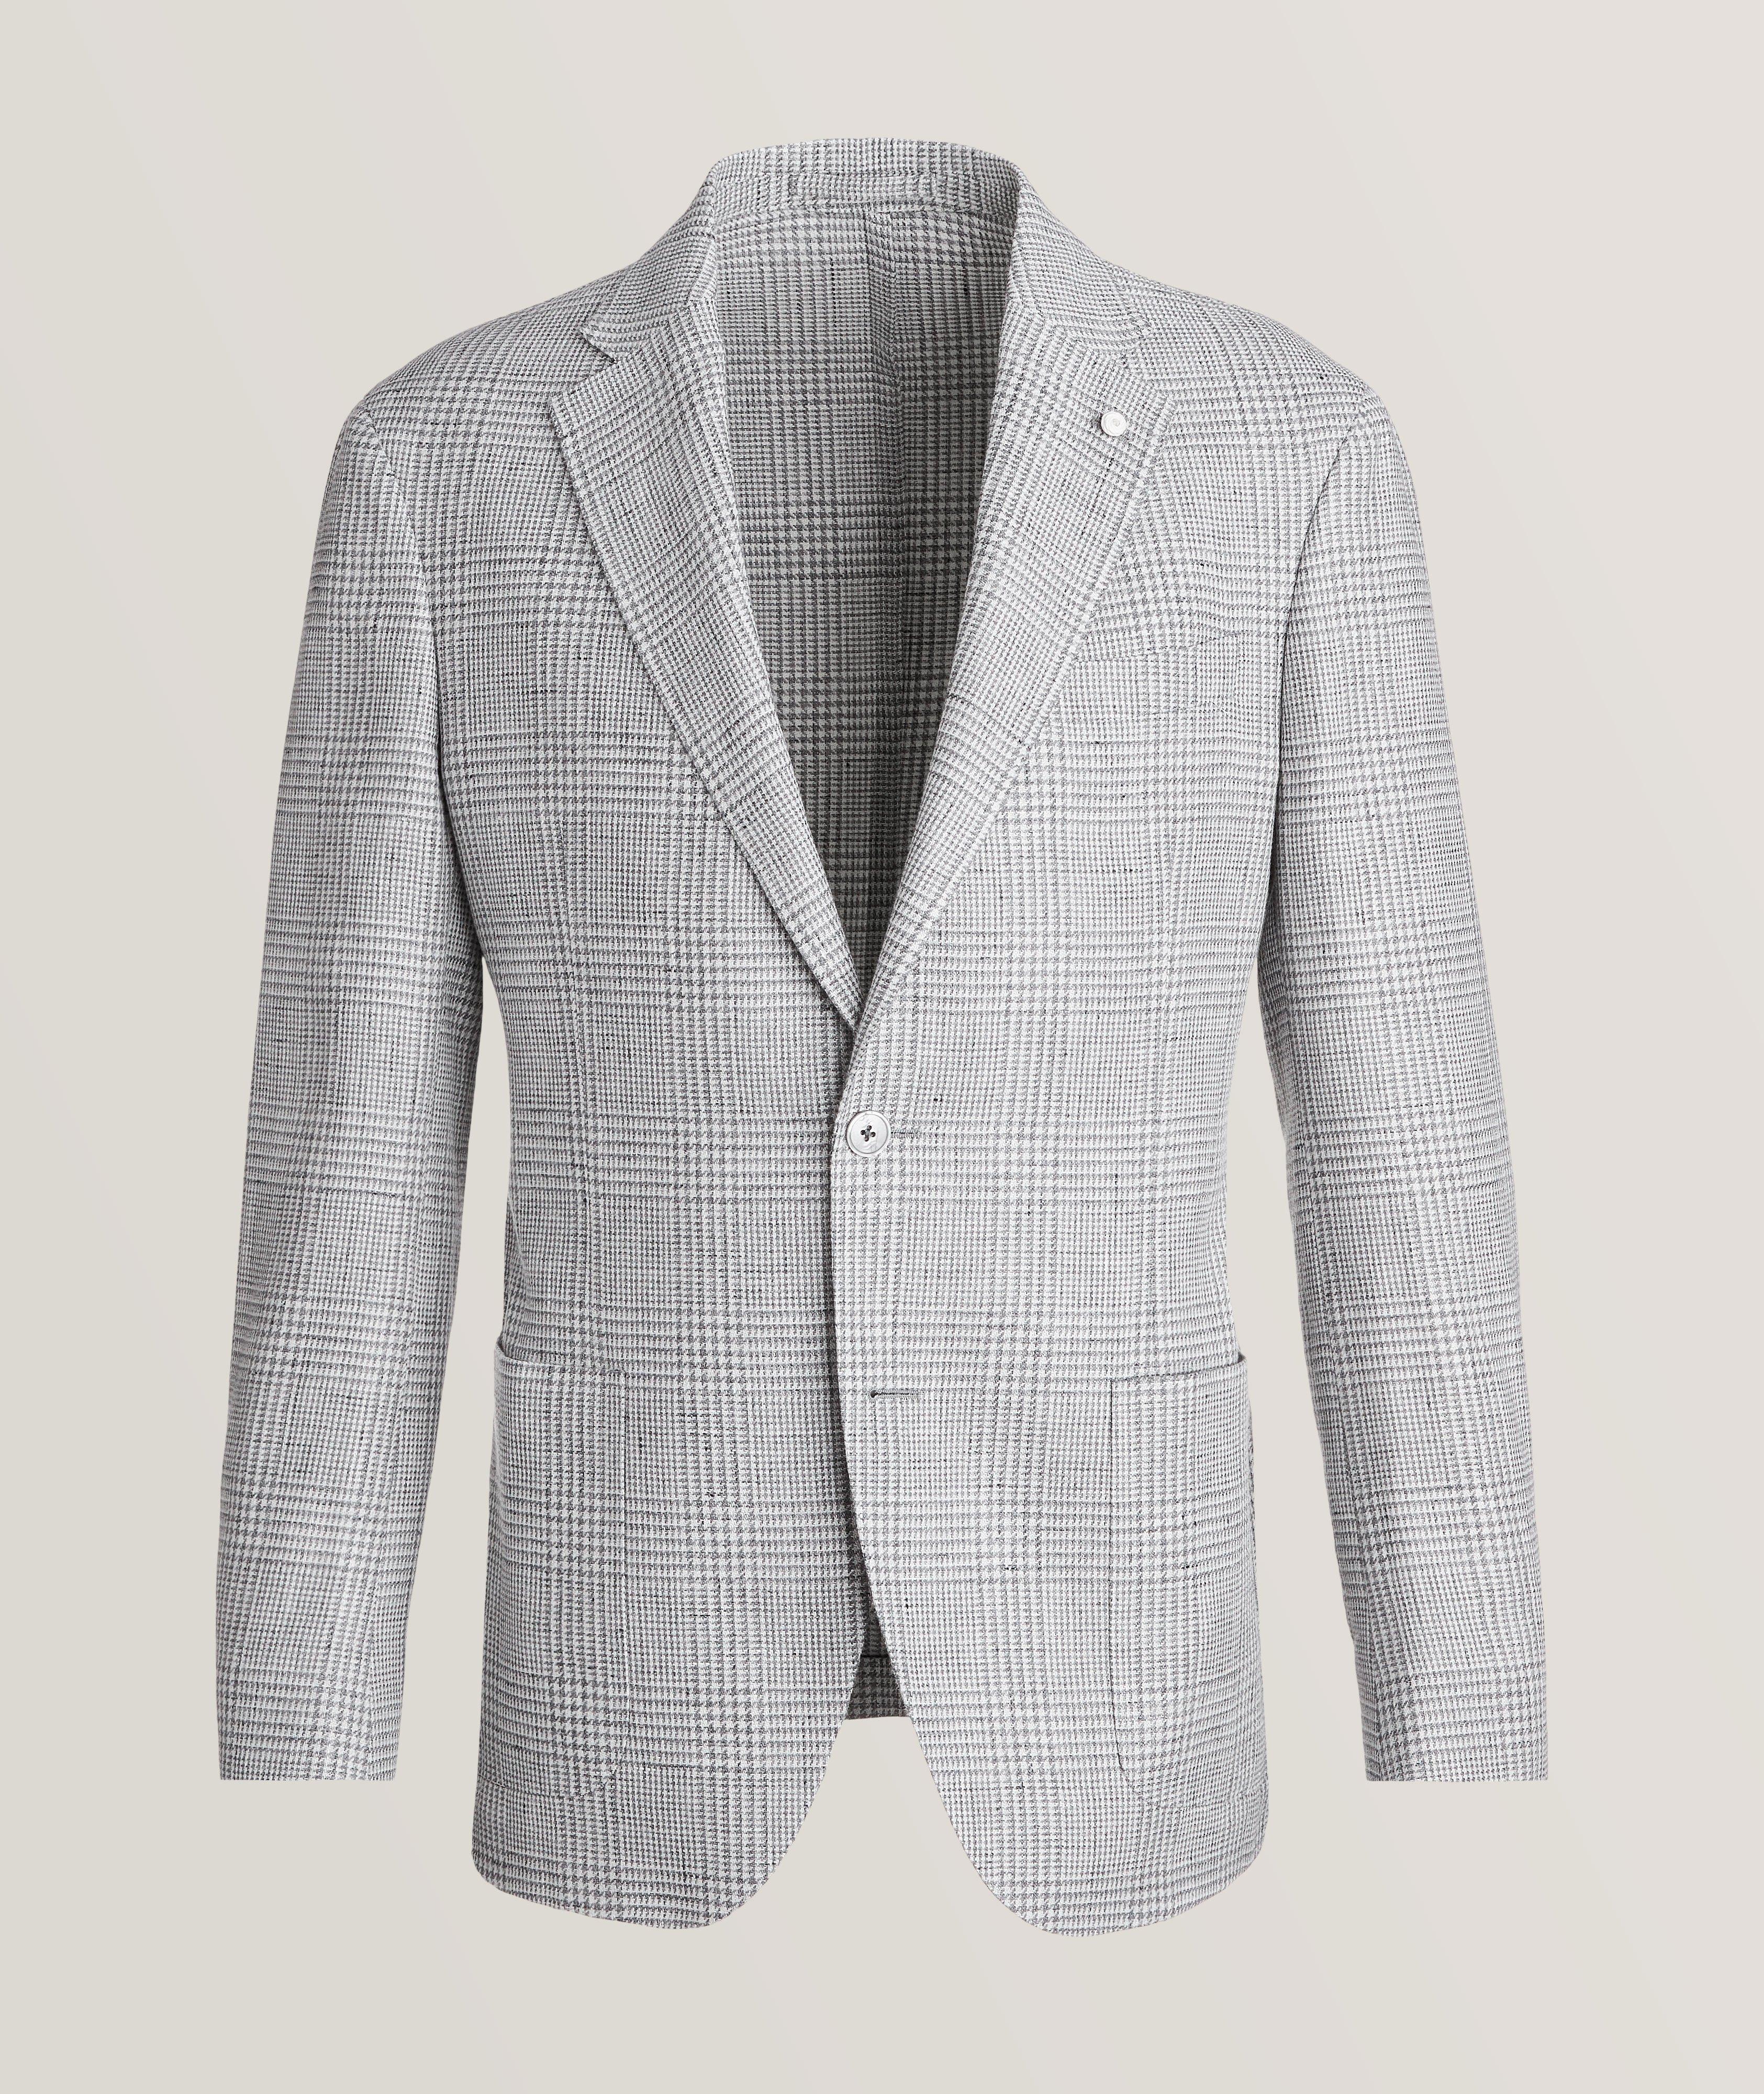 Luigi Bianchi Glencheck Pattern Flax-Wool Sport Jacket